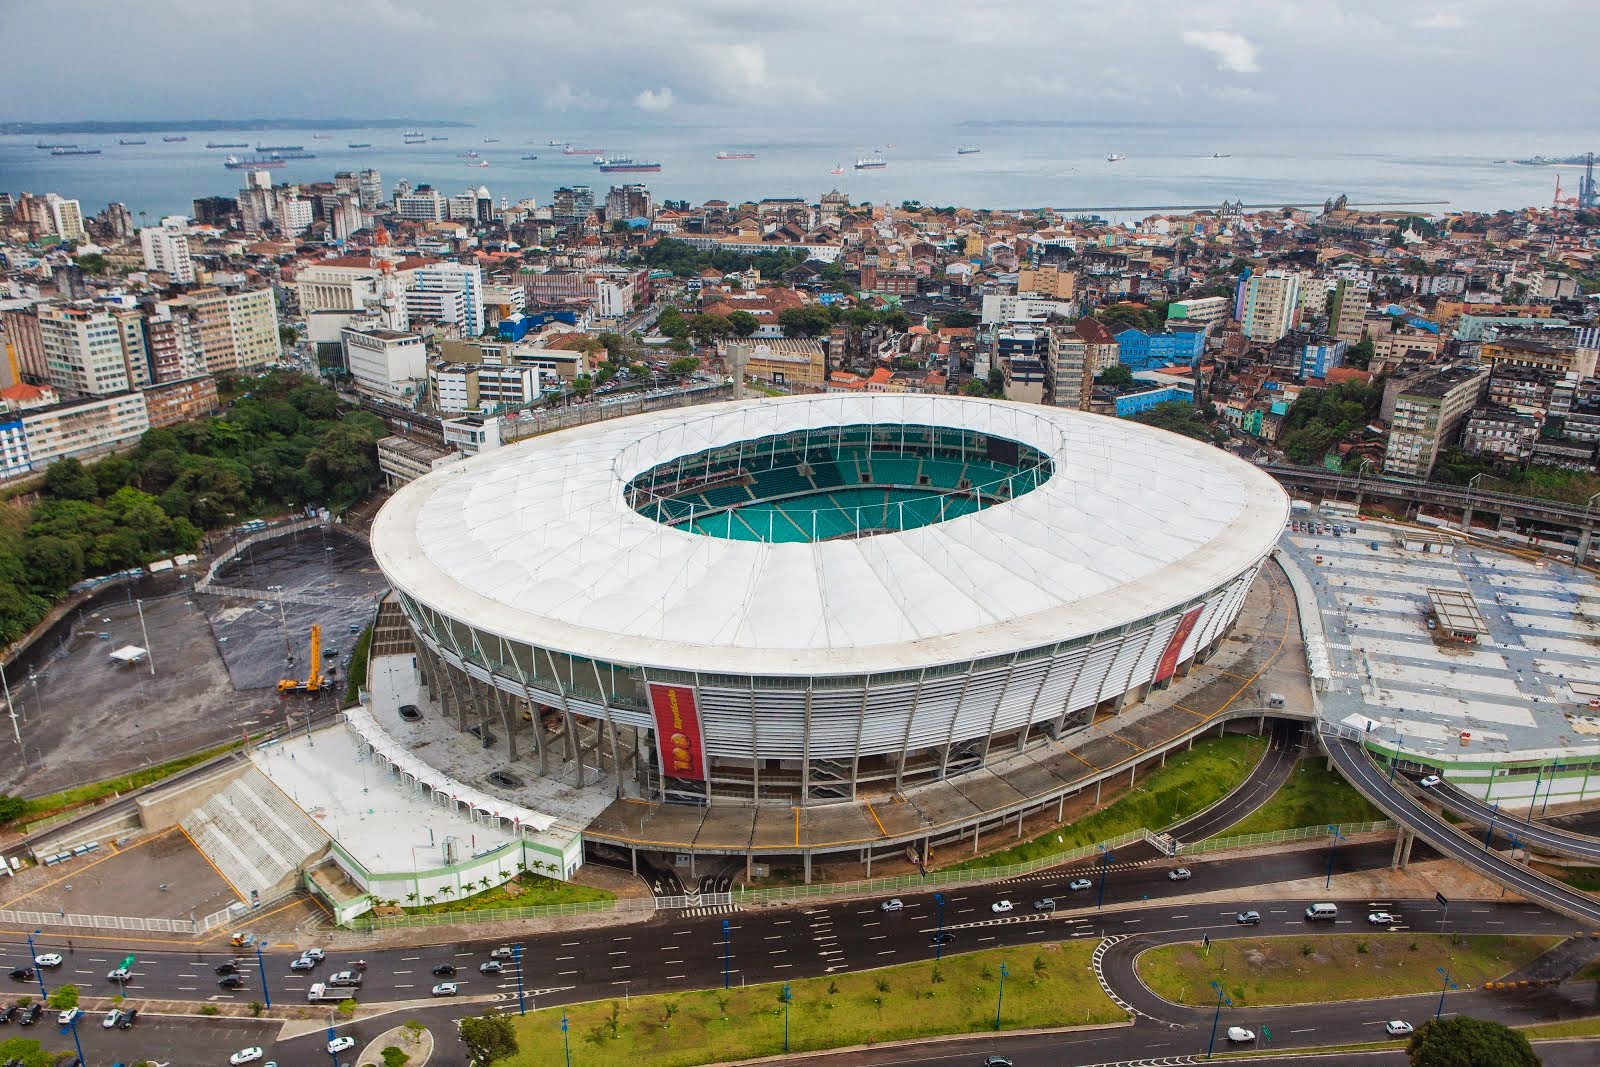 Arena Fonte Nova - 48.747